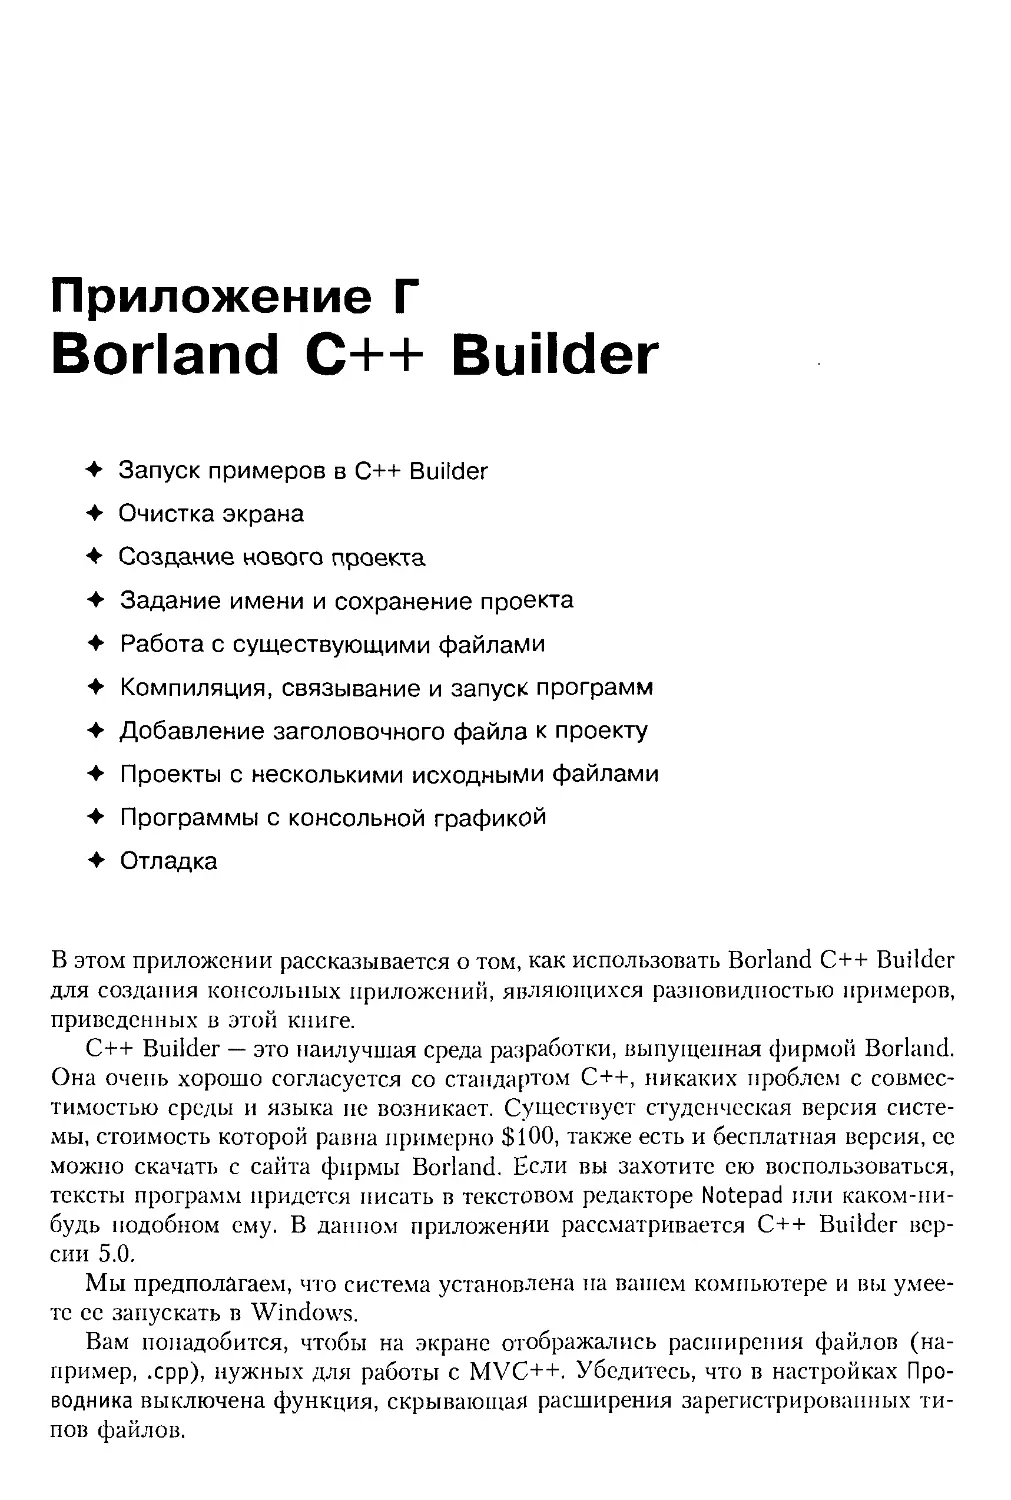 Приложение Г. Borland C++ Builder